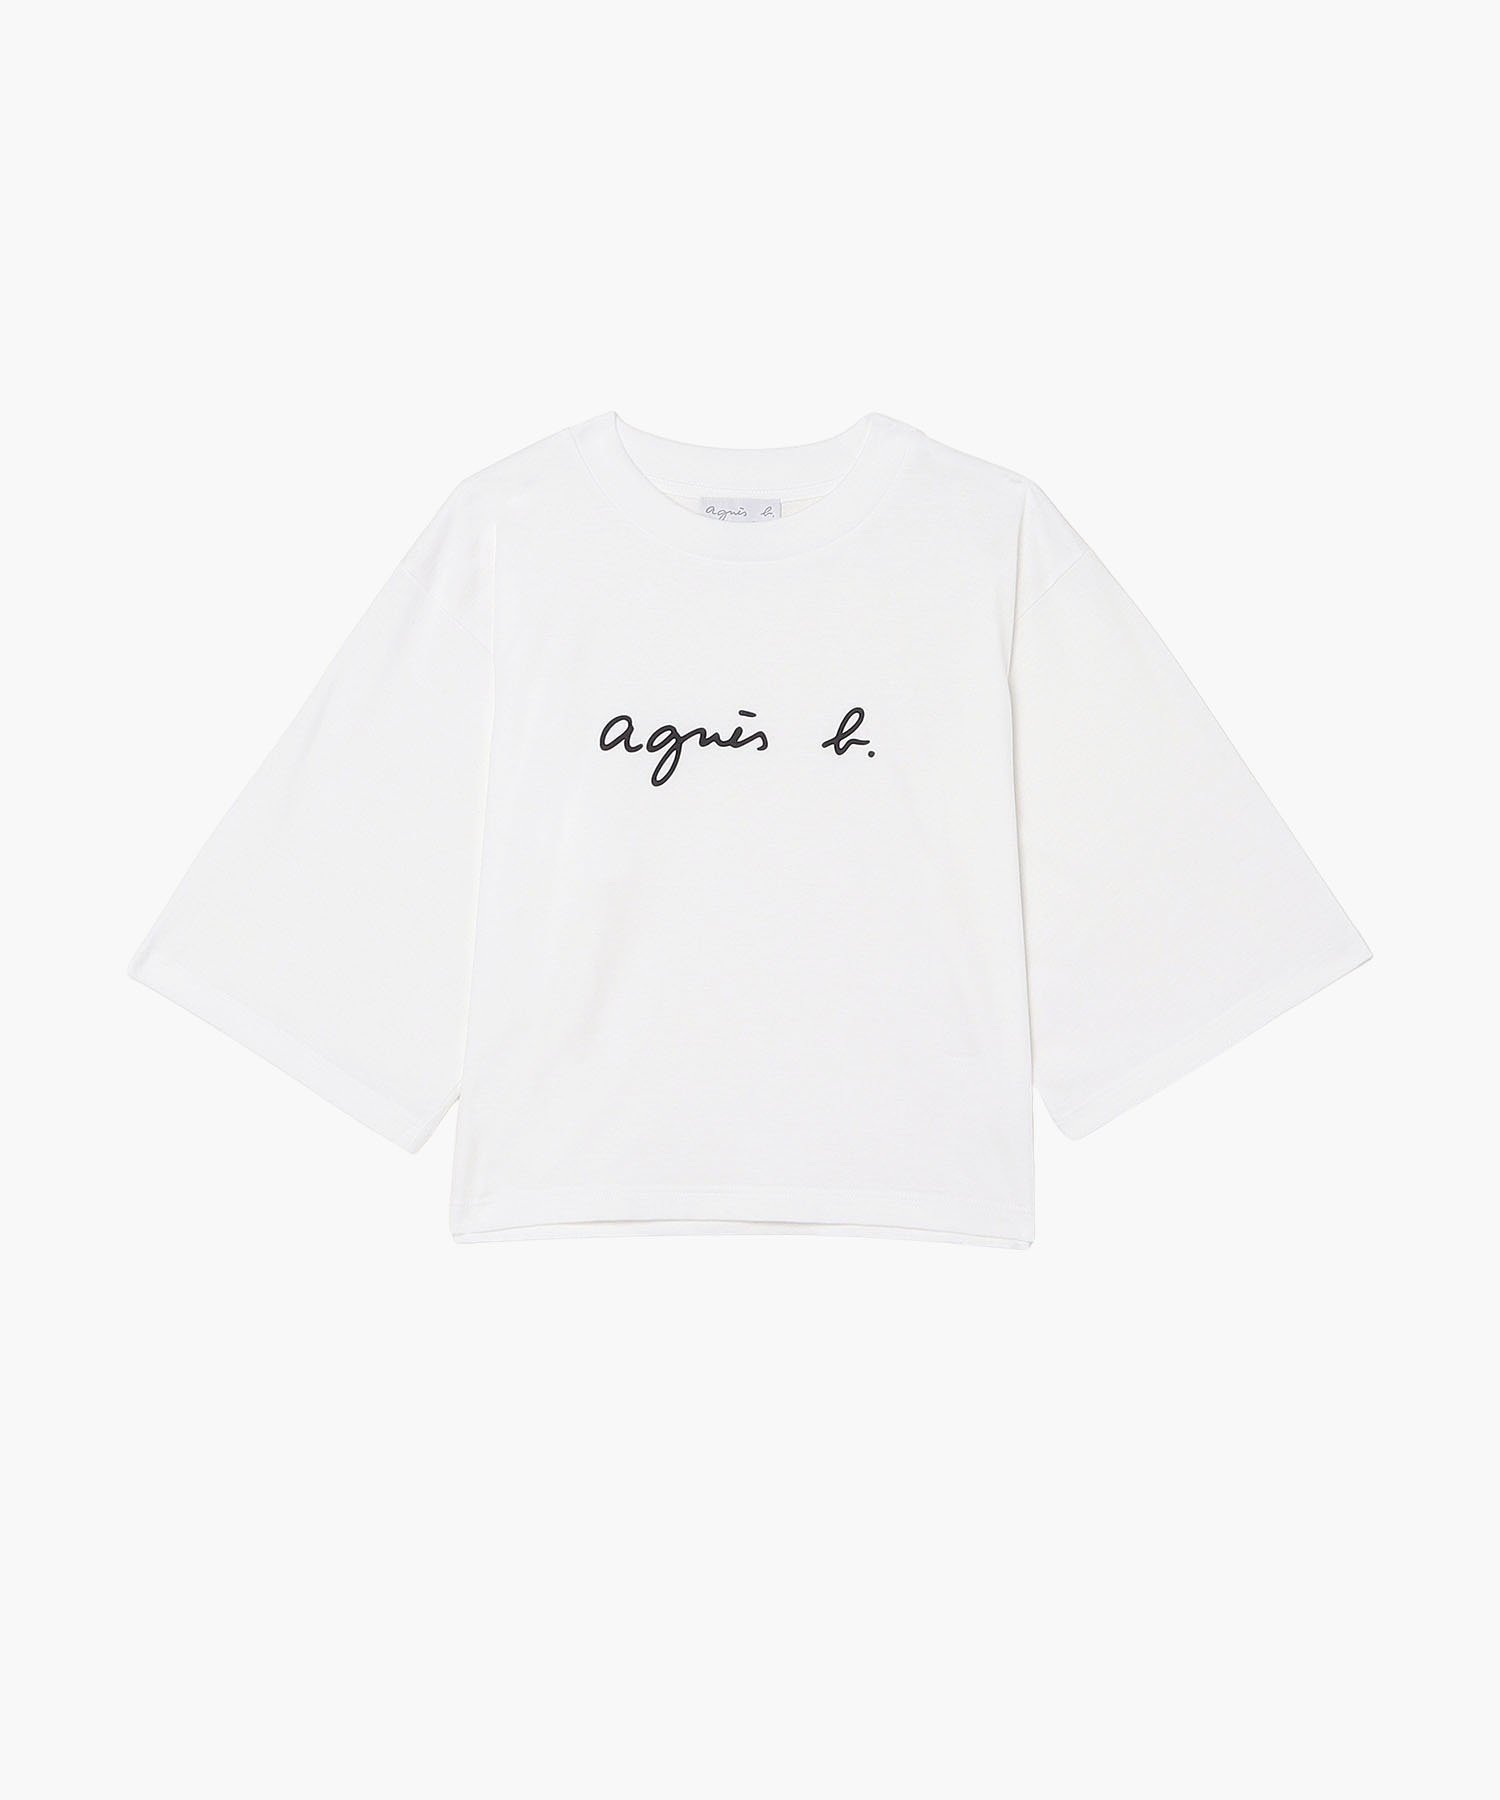 agnes b. FEMME WEB限定 S137 TS YOKO Tシャツ アニエスベー トップス カットソー・Tシャツ ホワイト